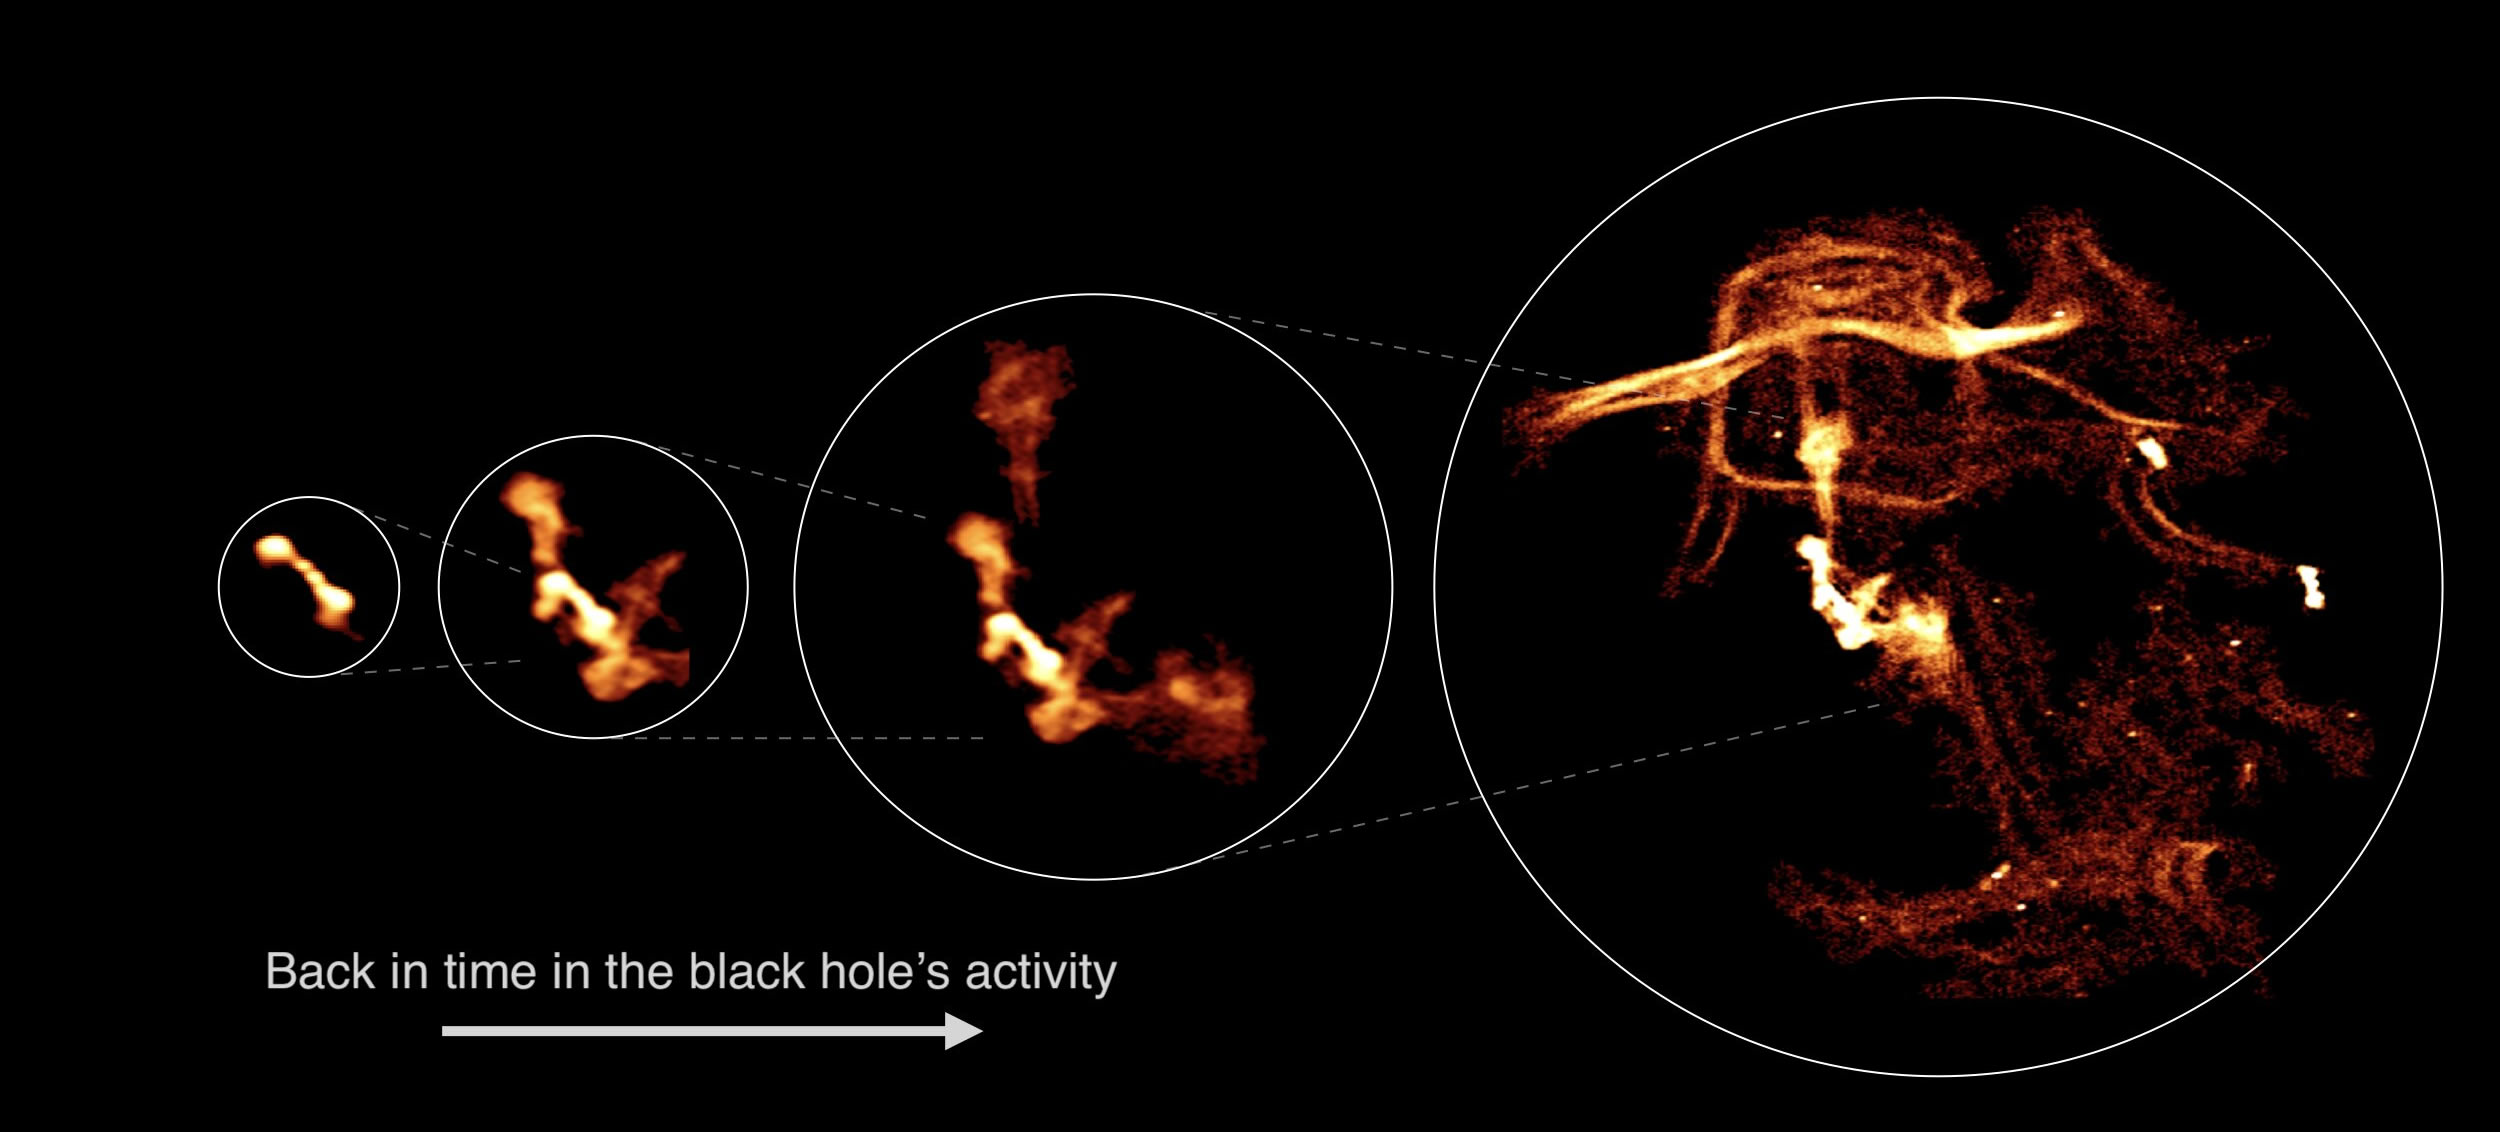 《自然·天文学》杂志：国际研究小组观察到来自活跃黑洞的热气体演化细节